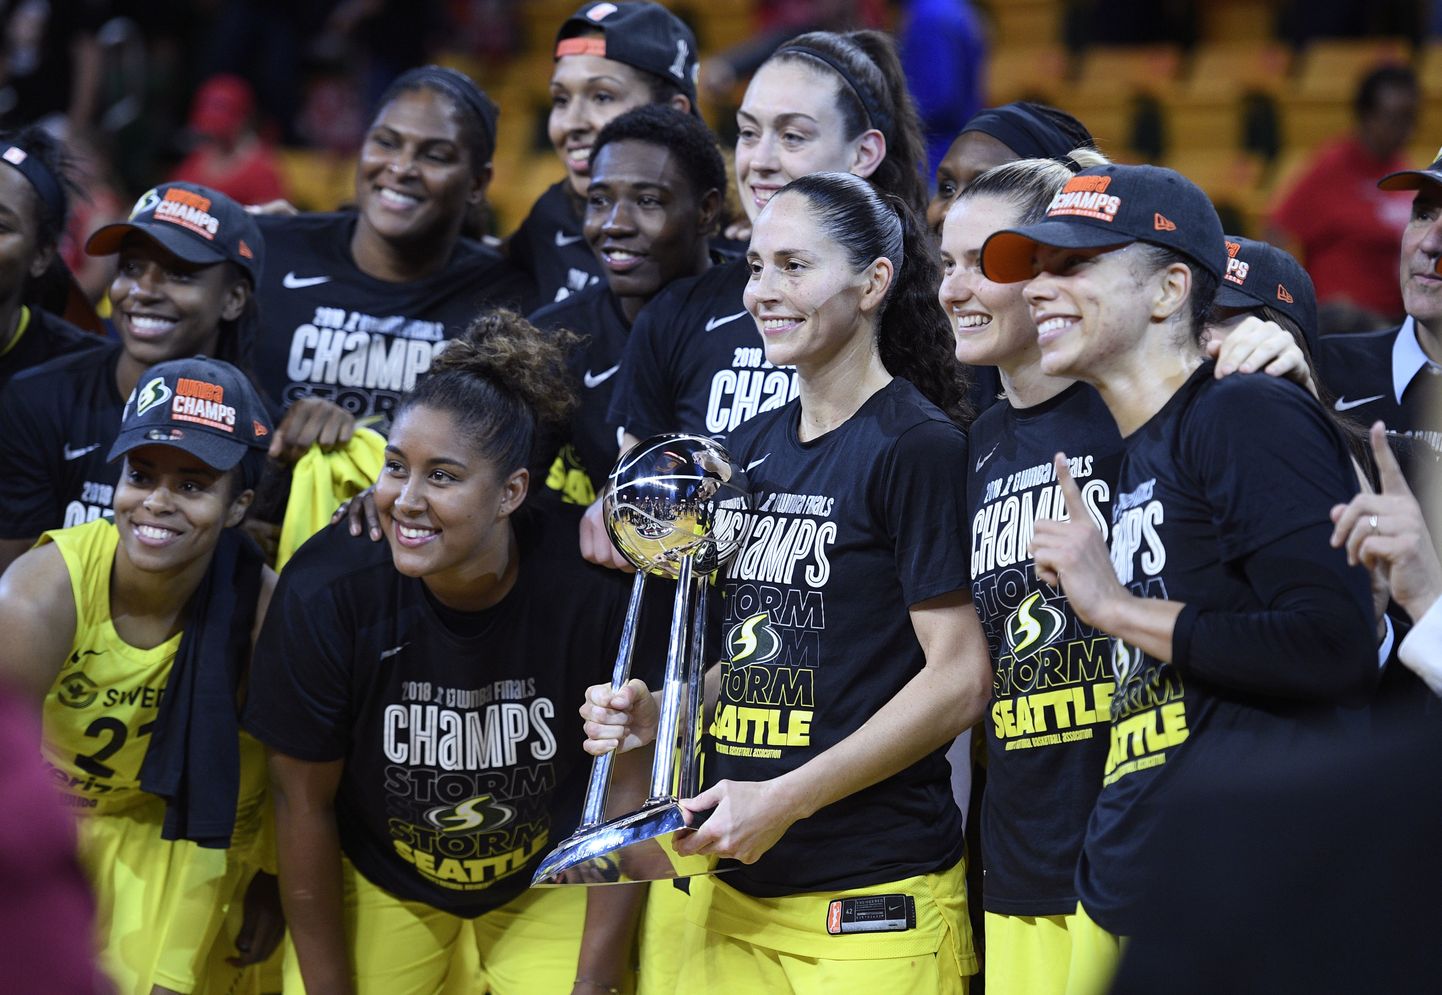 WNBA čempiones Sietlas "Storm" basketbolistes